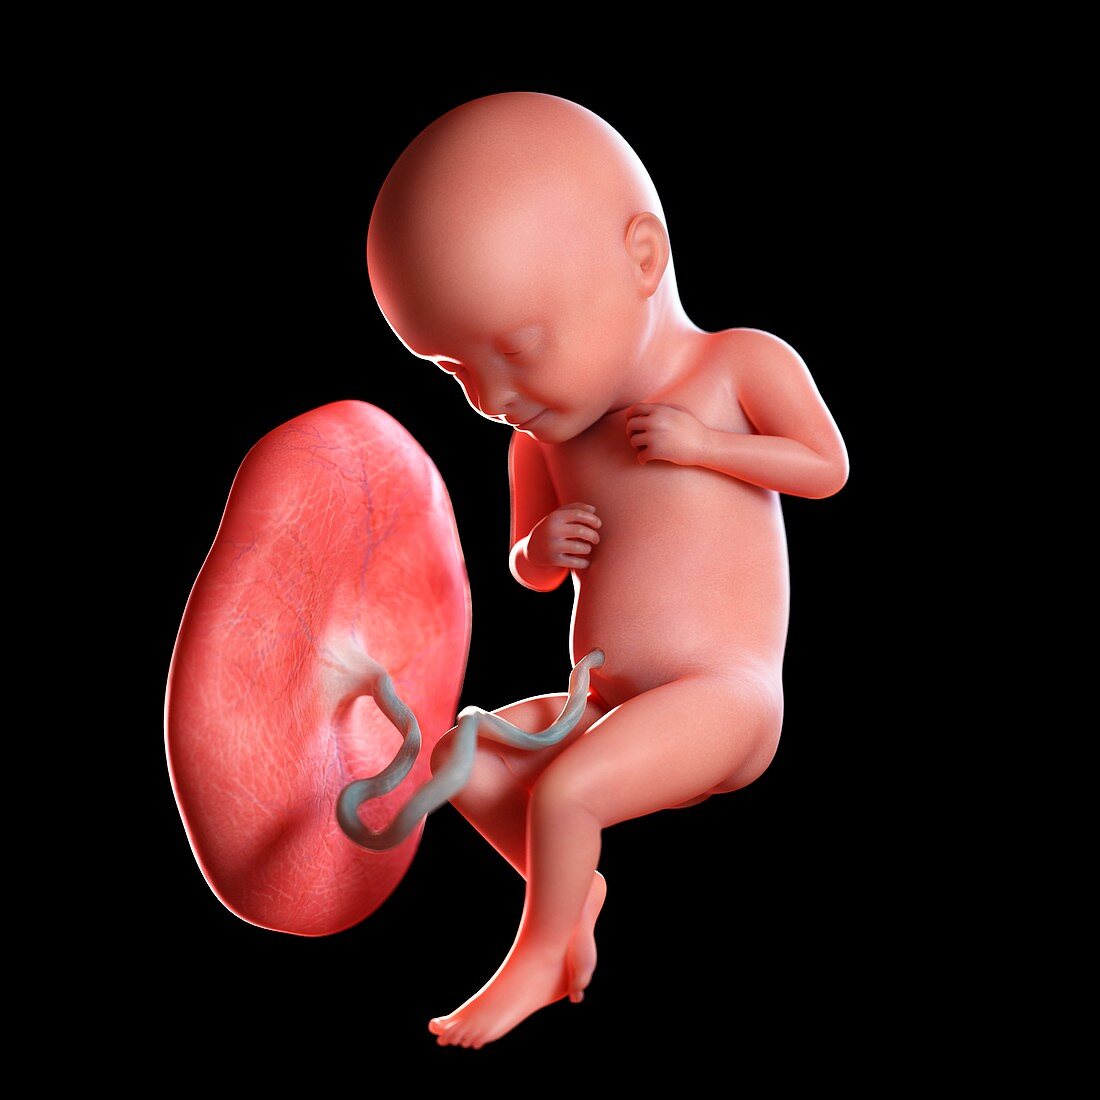 Human foetus age 32 weeks, illustration